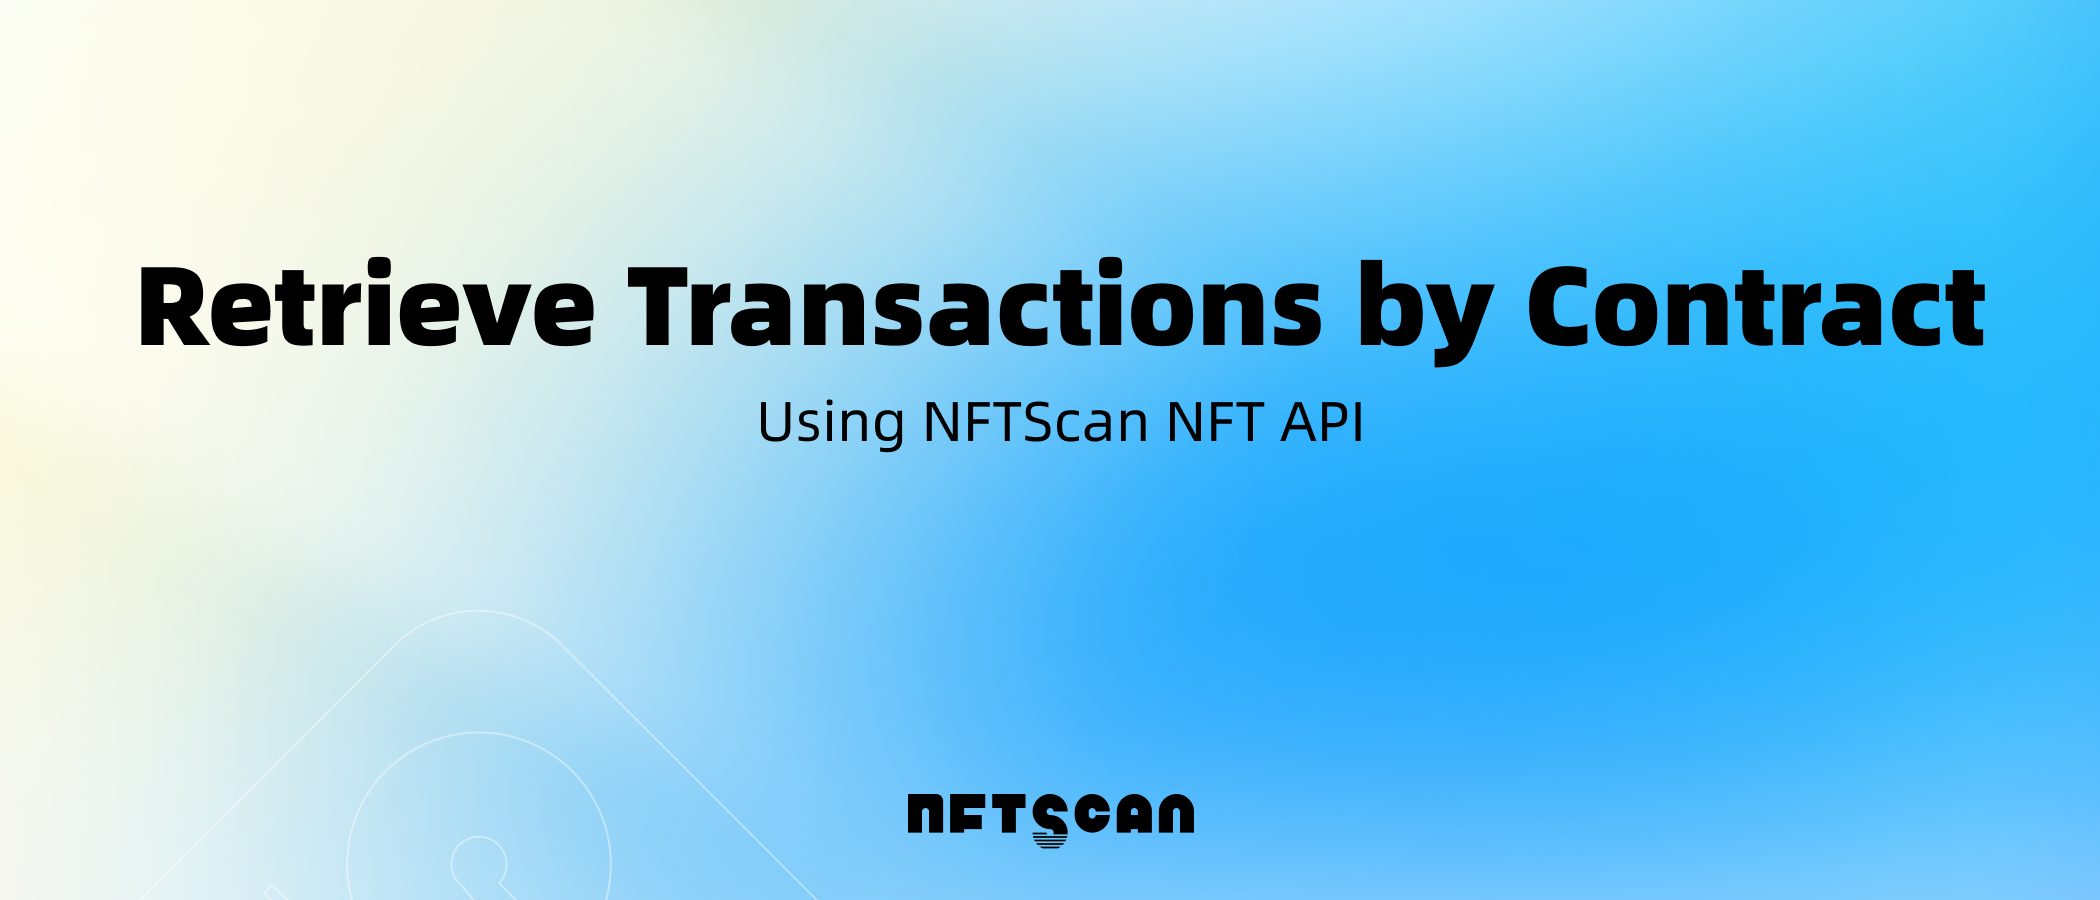 如何使用 NFTScan API 检索 NFT 合约地址下 Transactions 数据